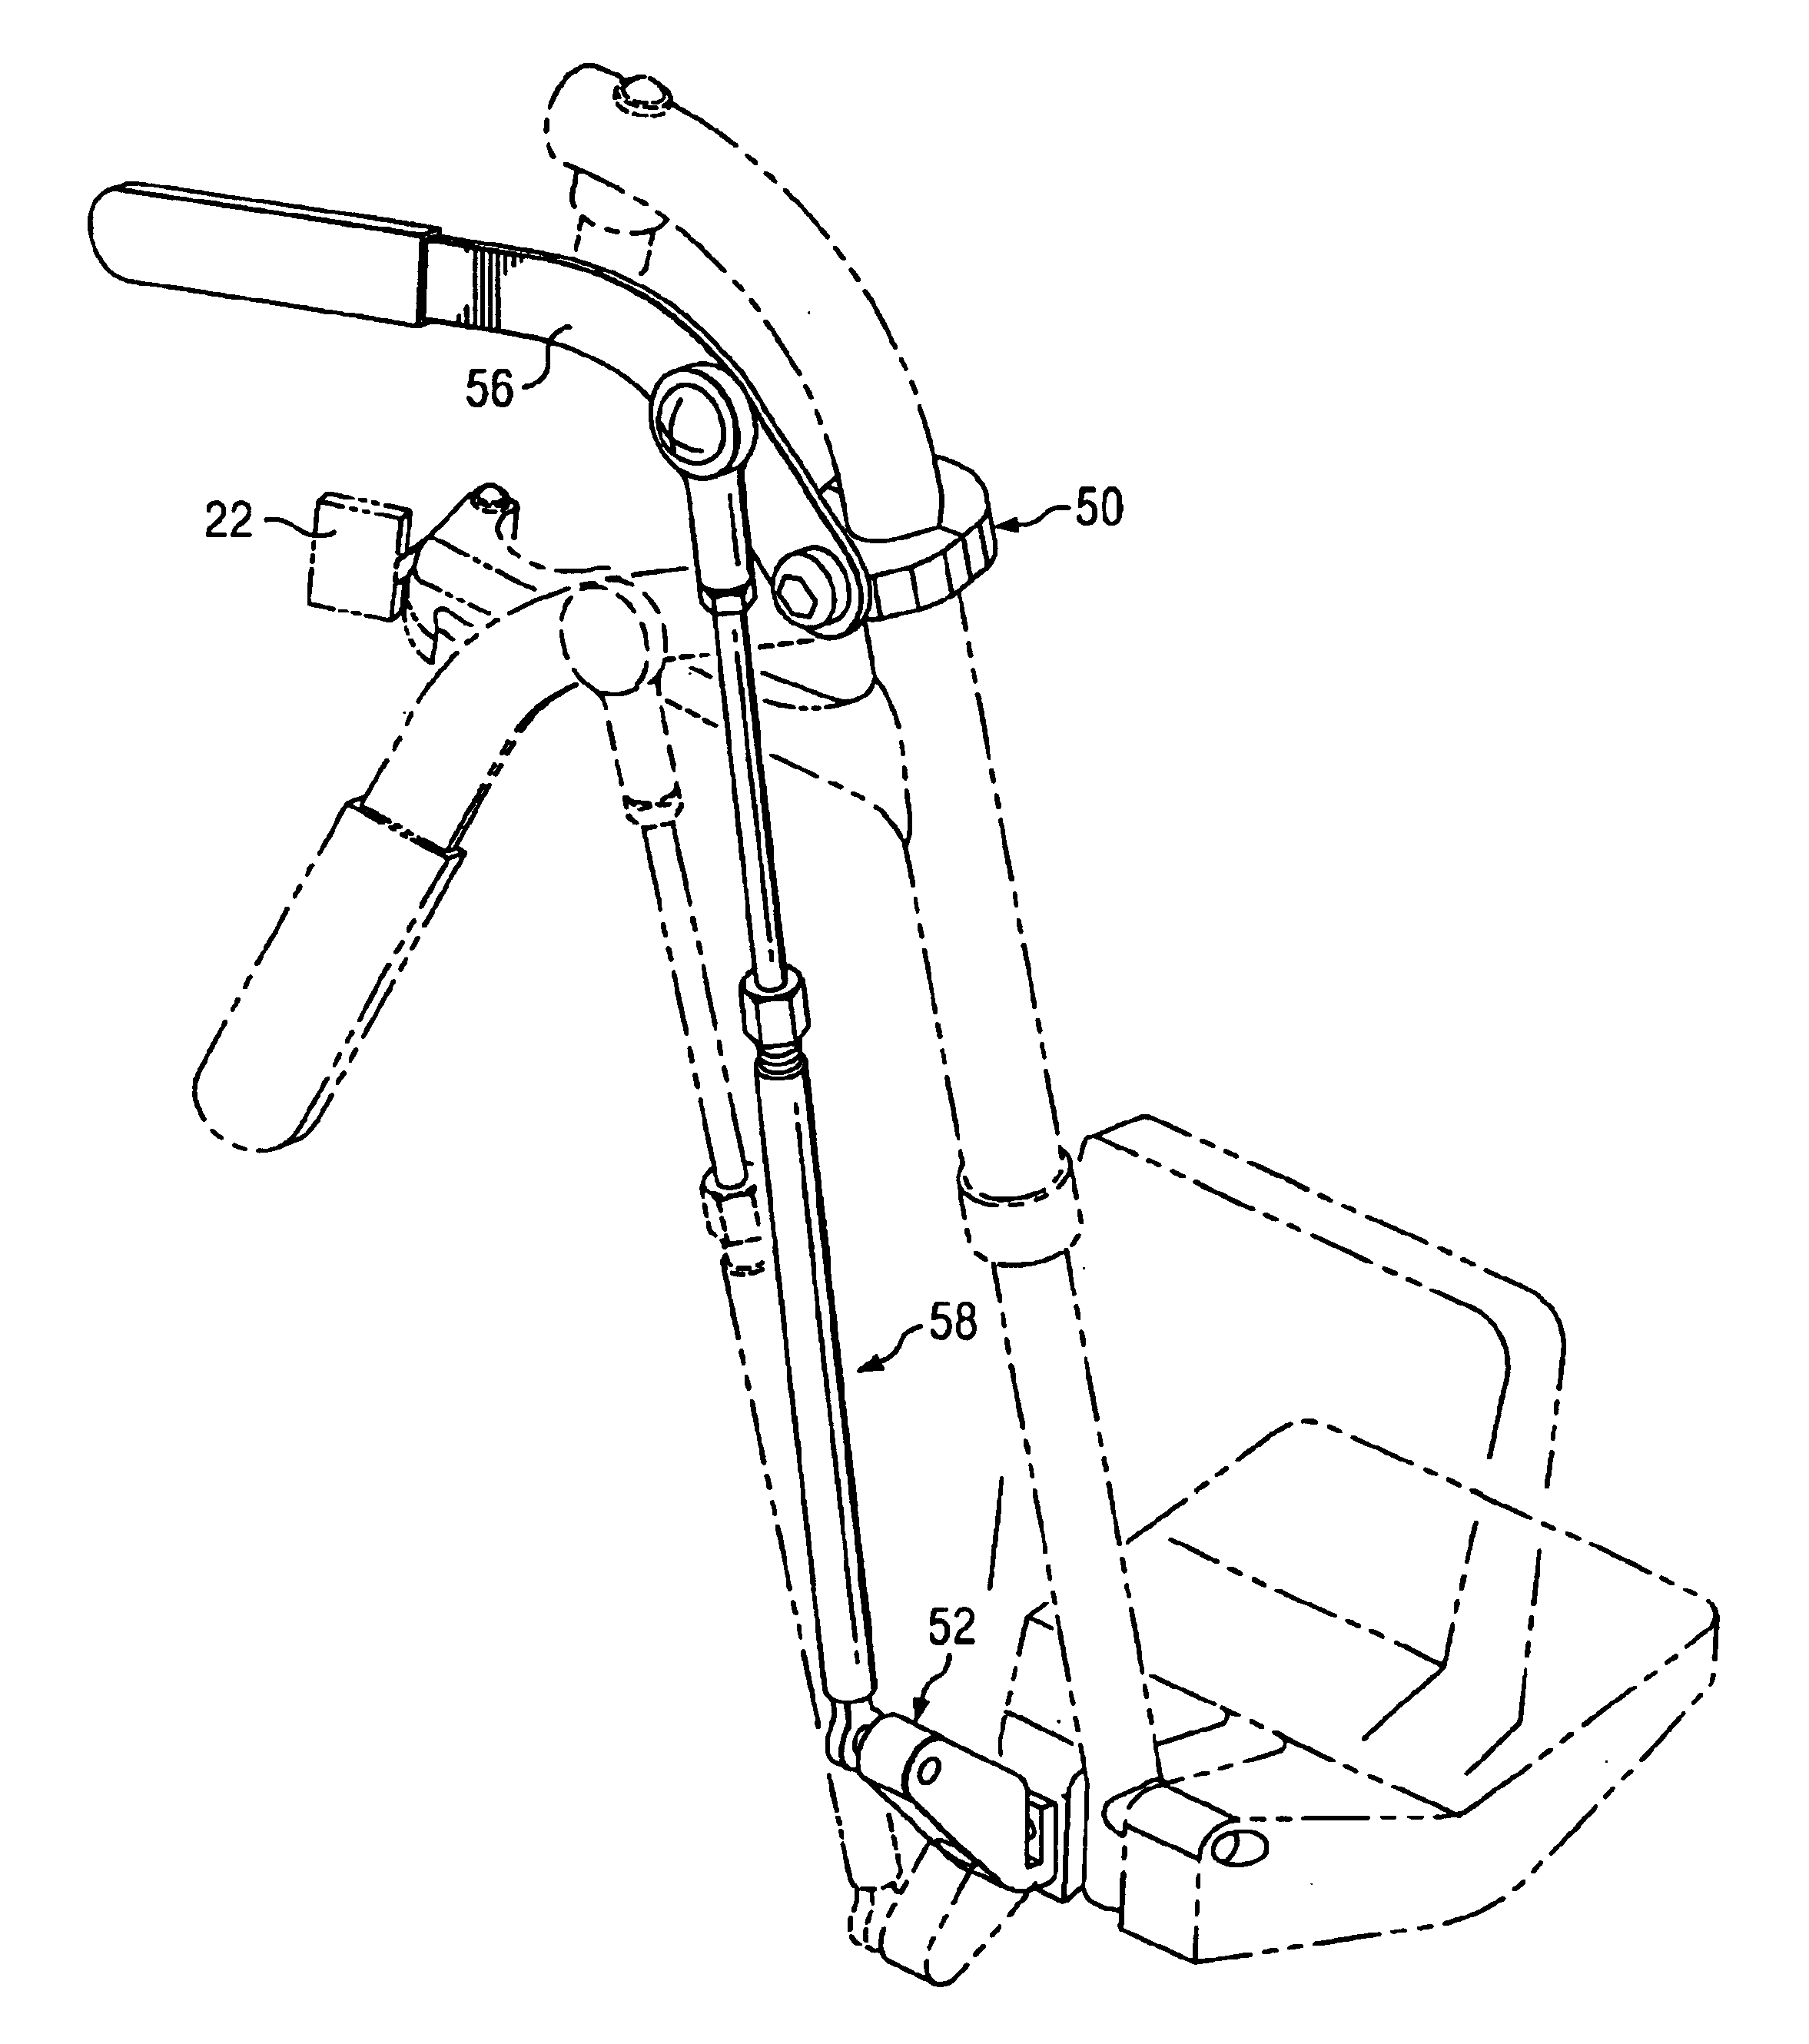 Wheelchair footrest retractor